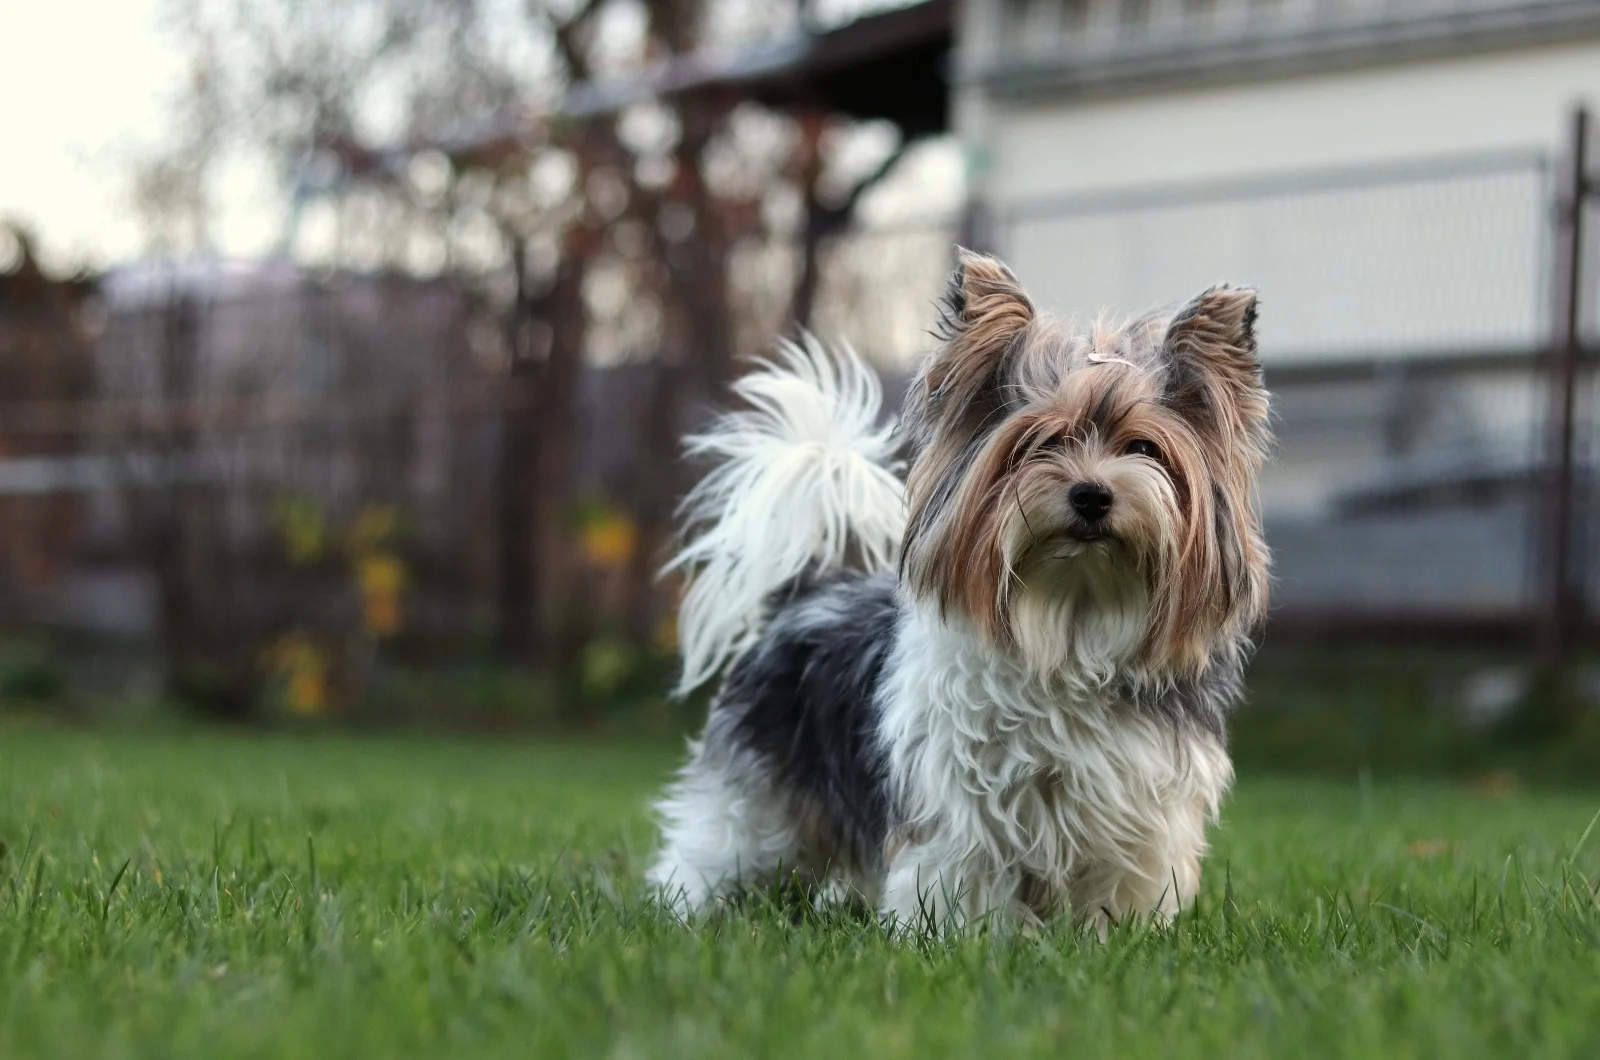 Biewer Terrier standing on grass